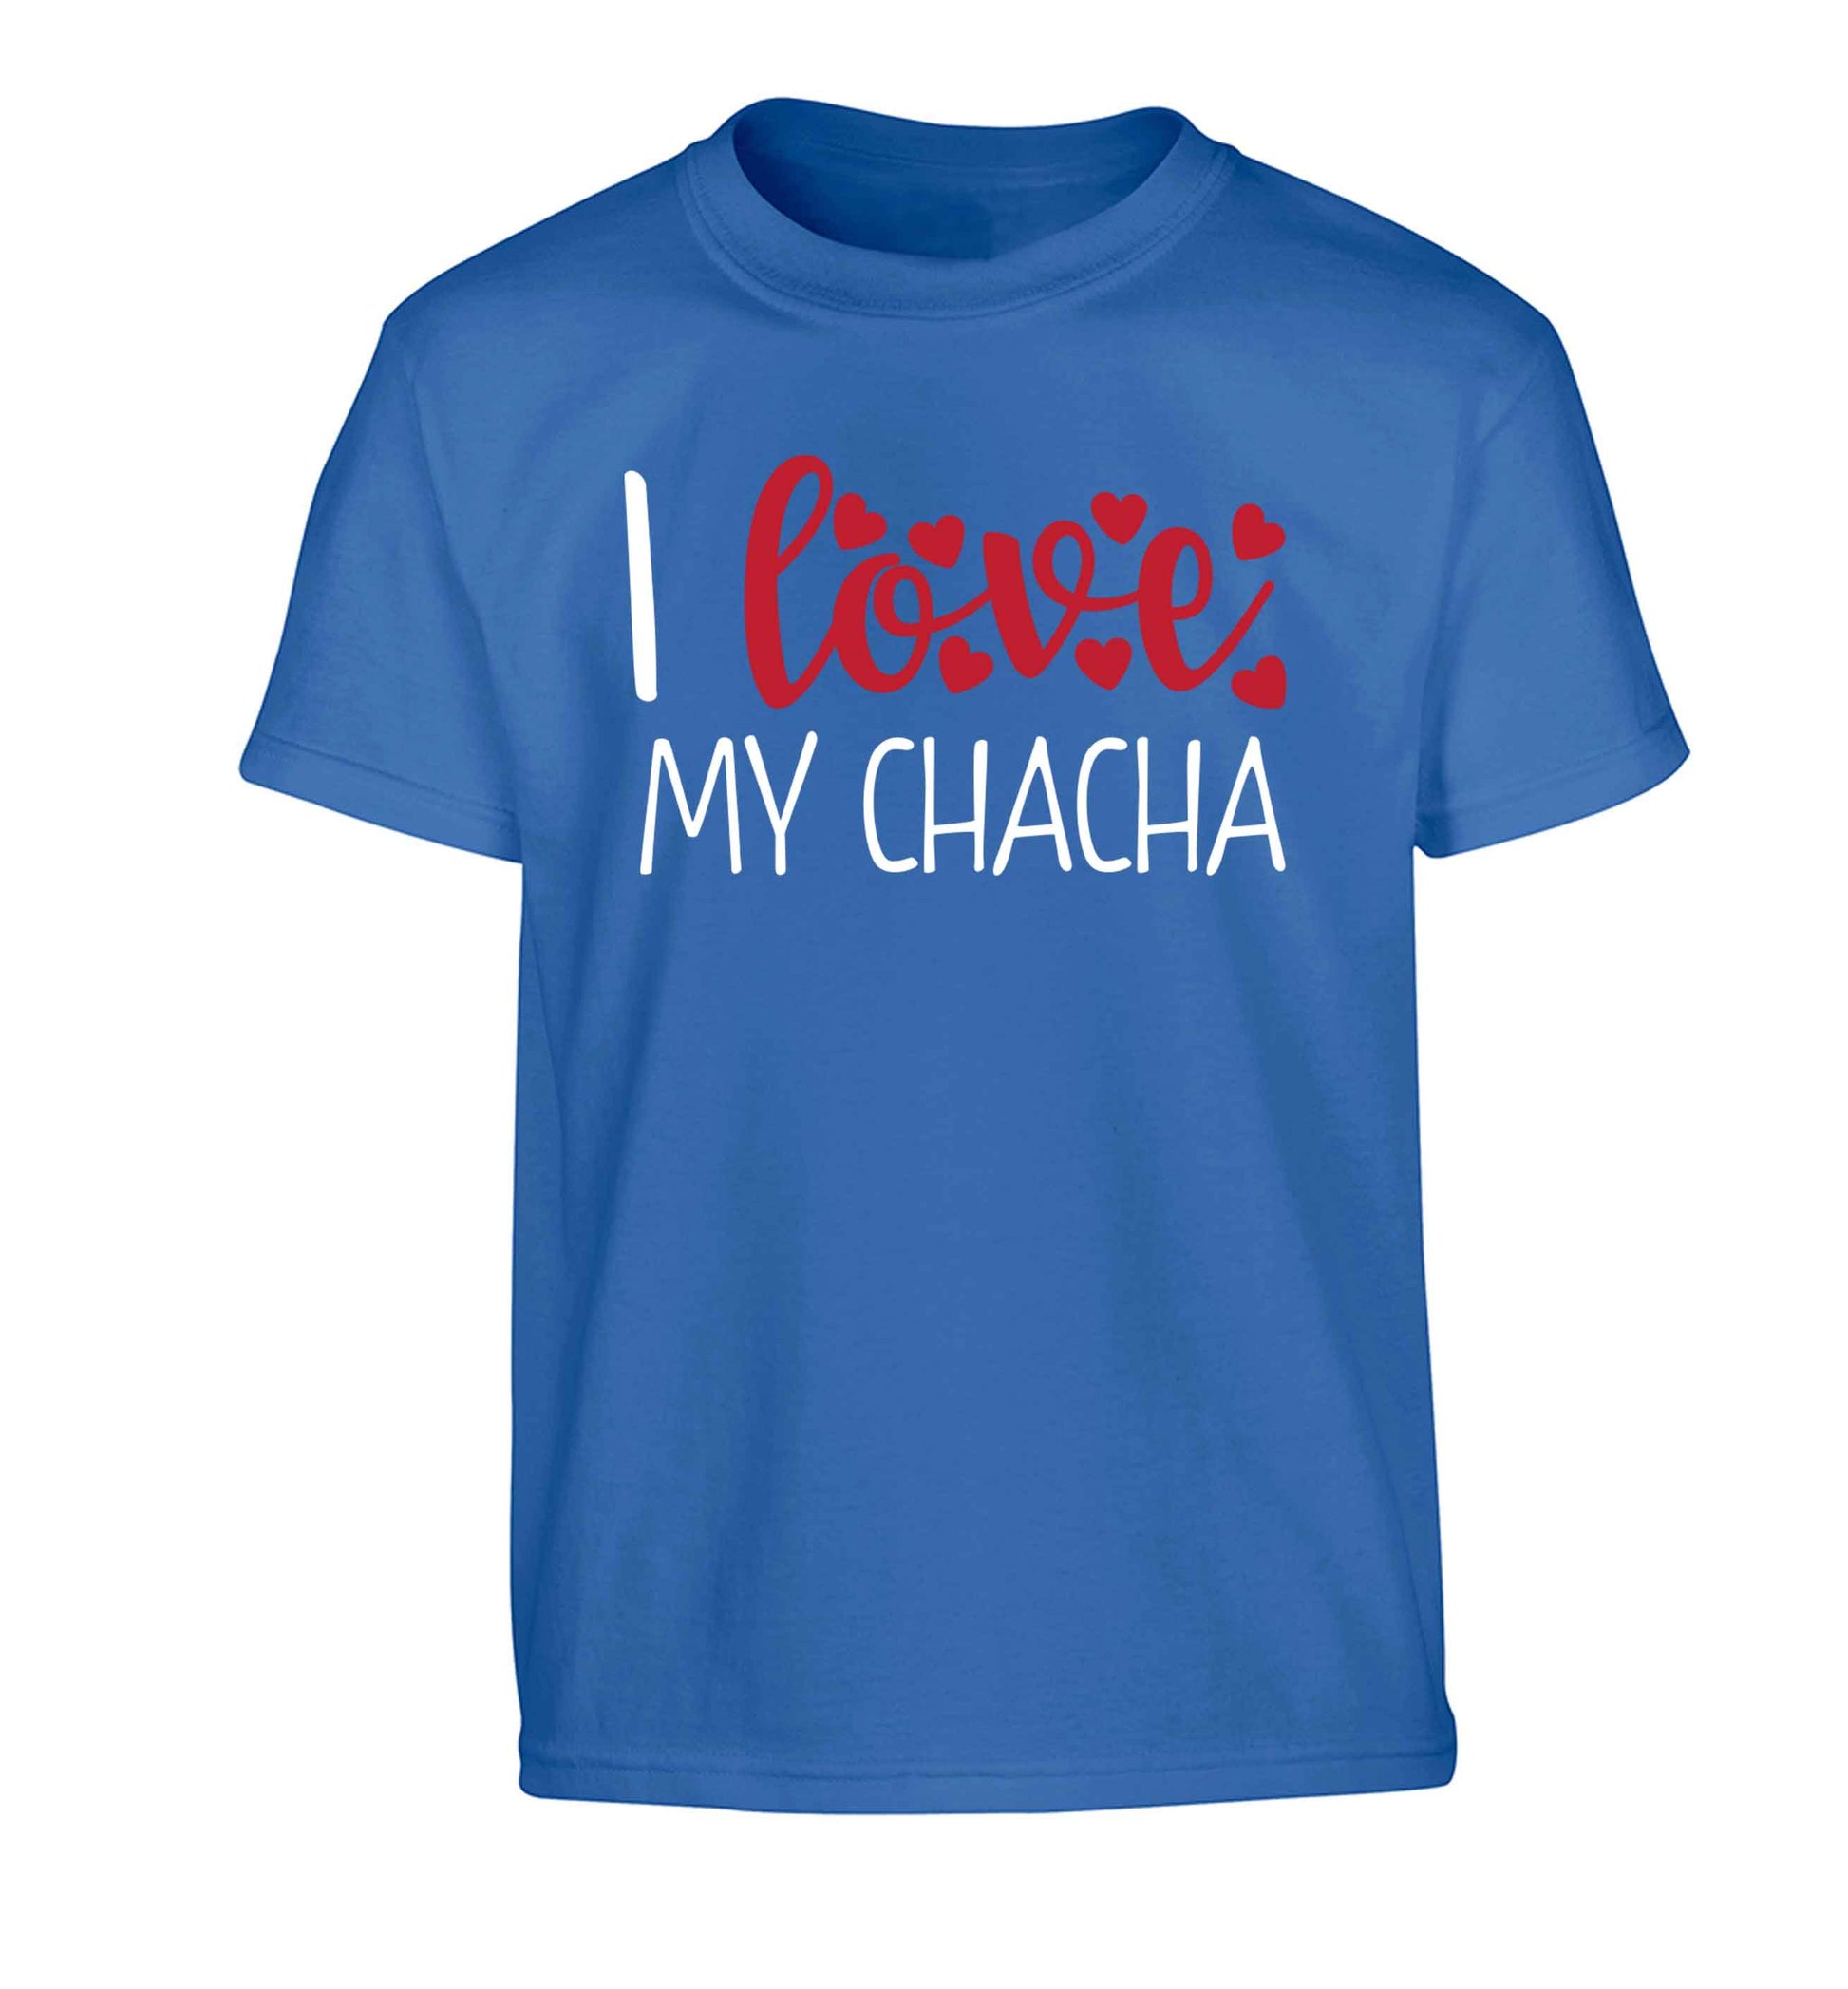 I love my chacha Children's blue Tshirt 12-13 Years